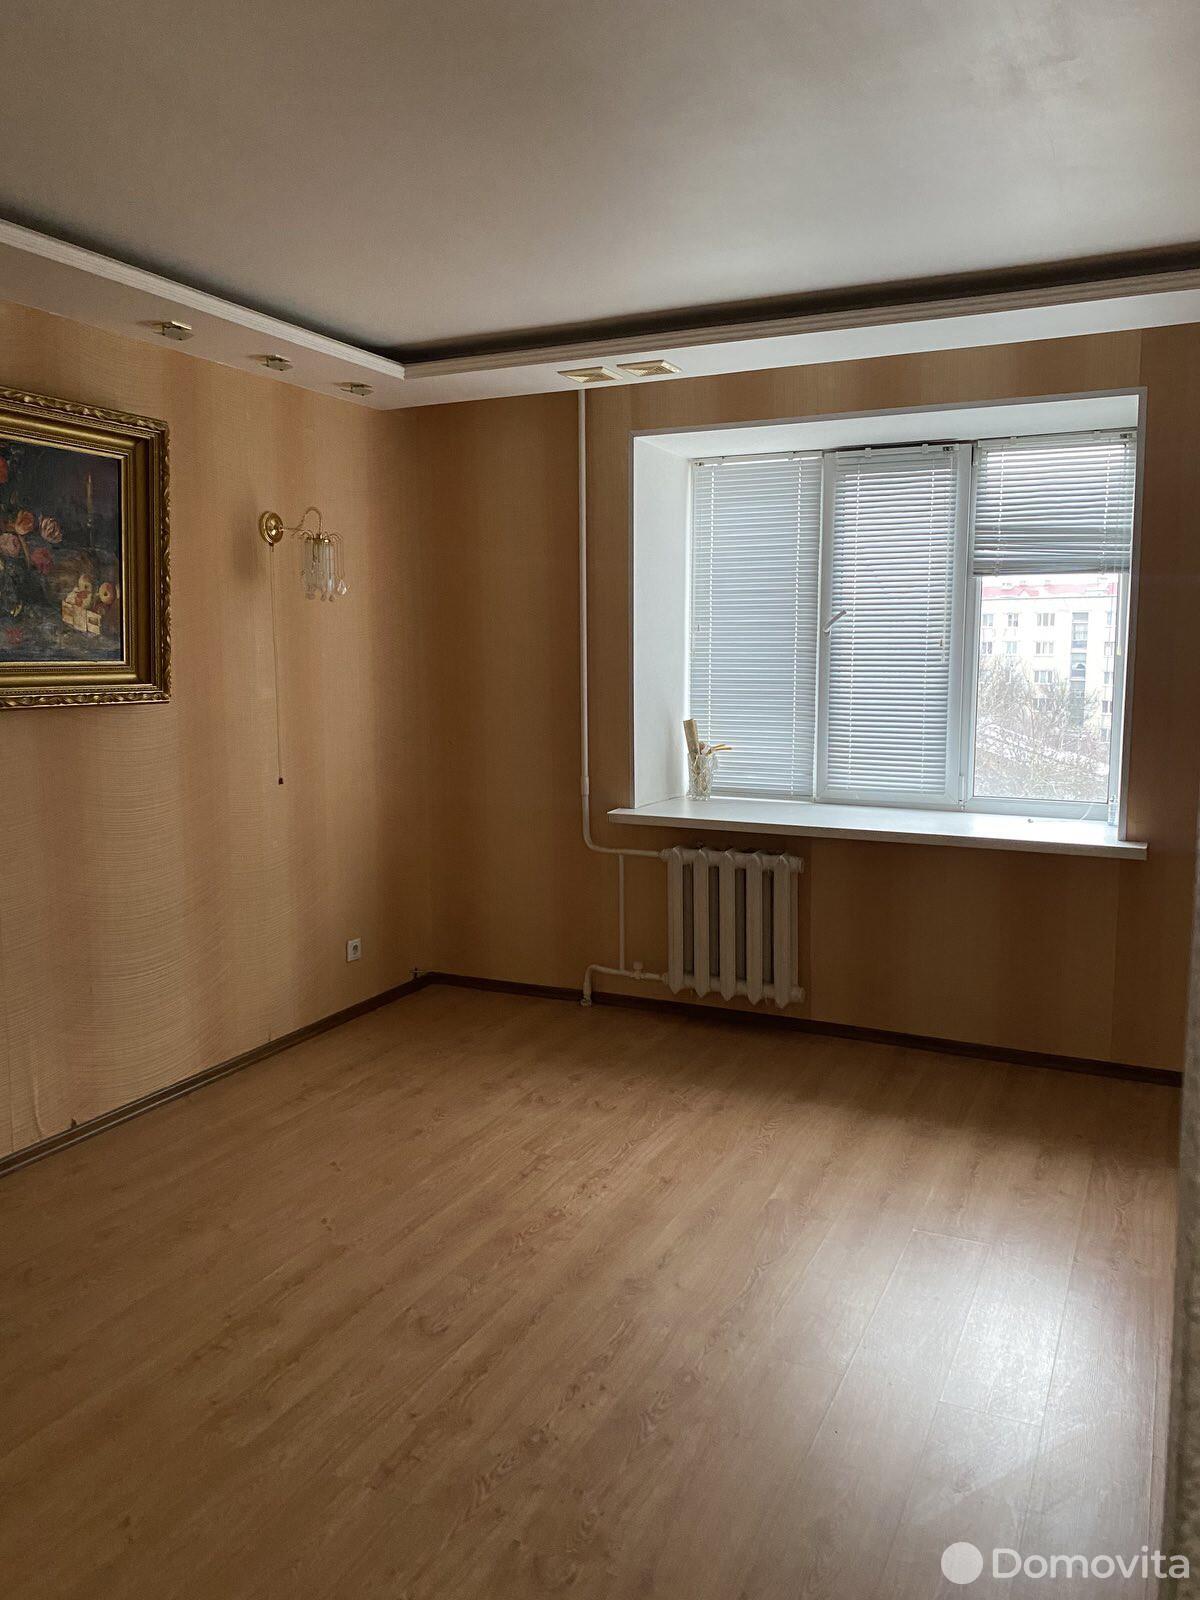 квартира, Пинск, ул. Мопровская, д. 11, стоимость продажи 129 596 р.